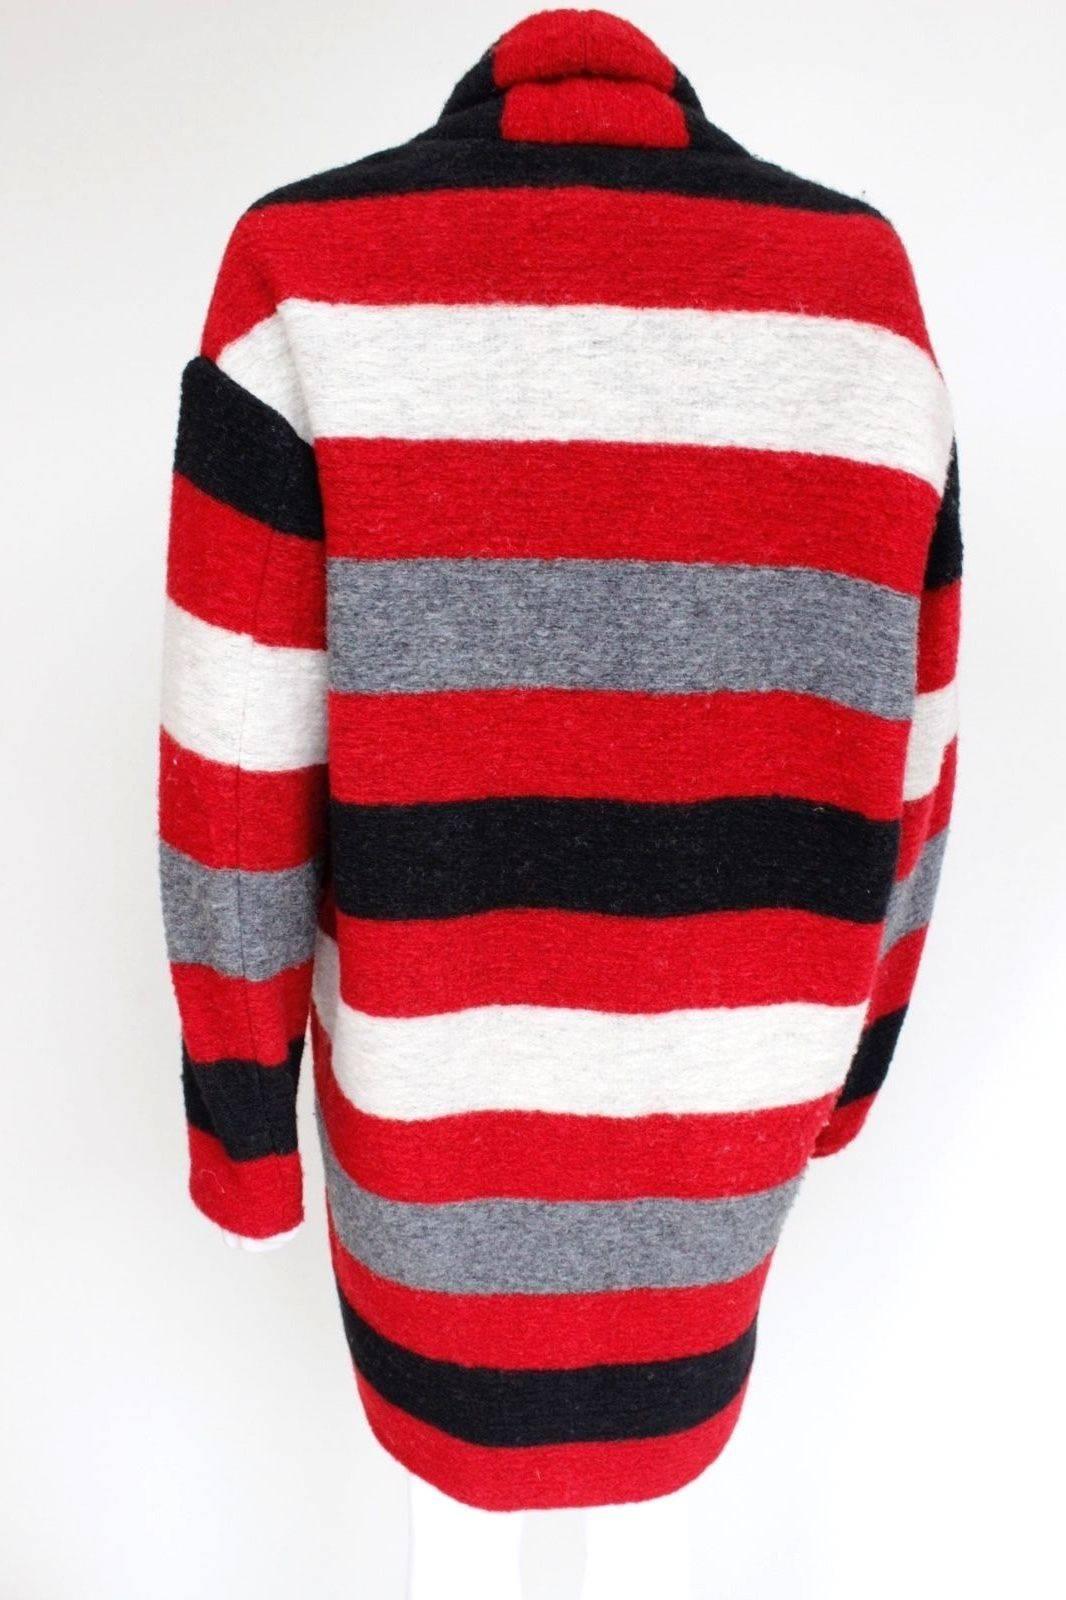  Isabel Marant Gabriel blanket-striped Oversized Red Black Coat 34 uk 6-8  2